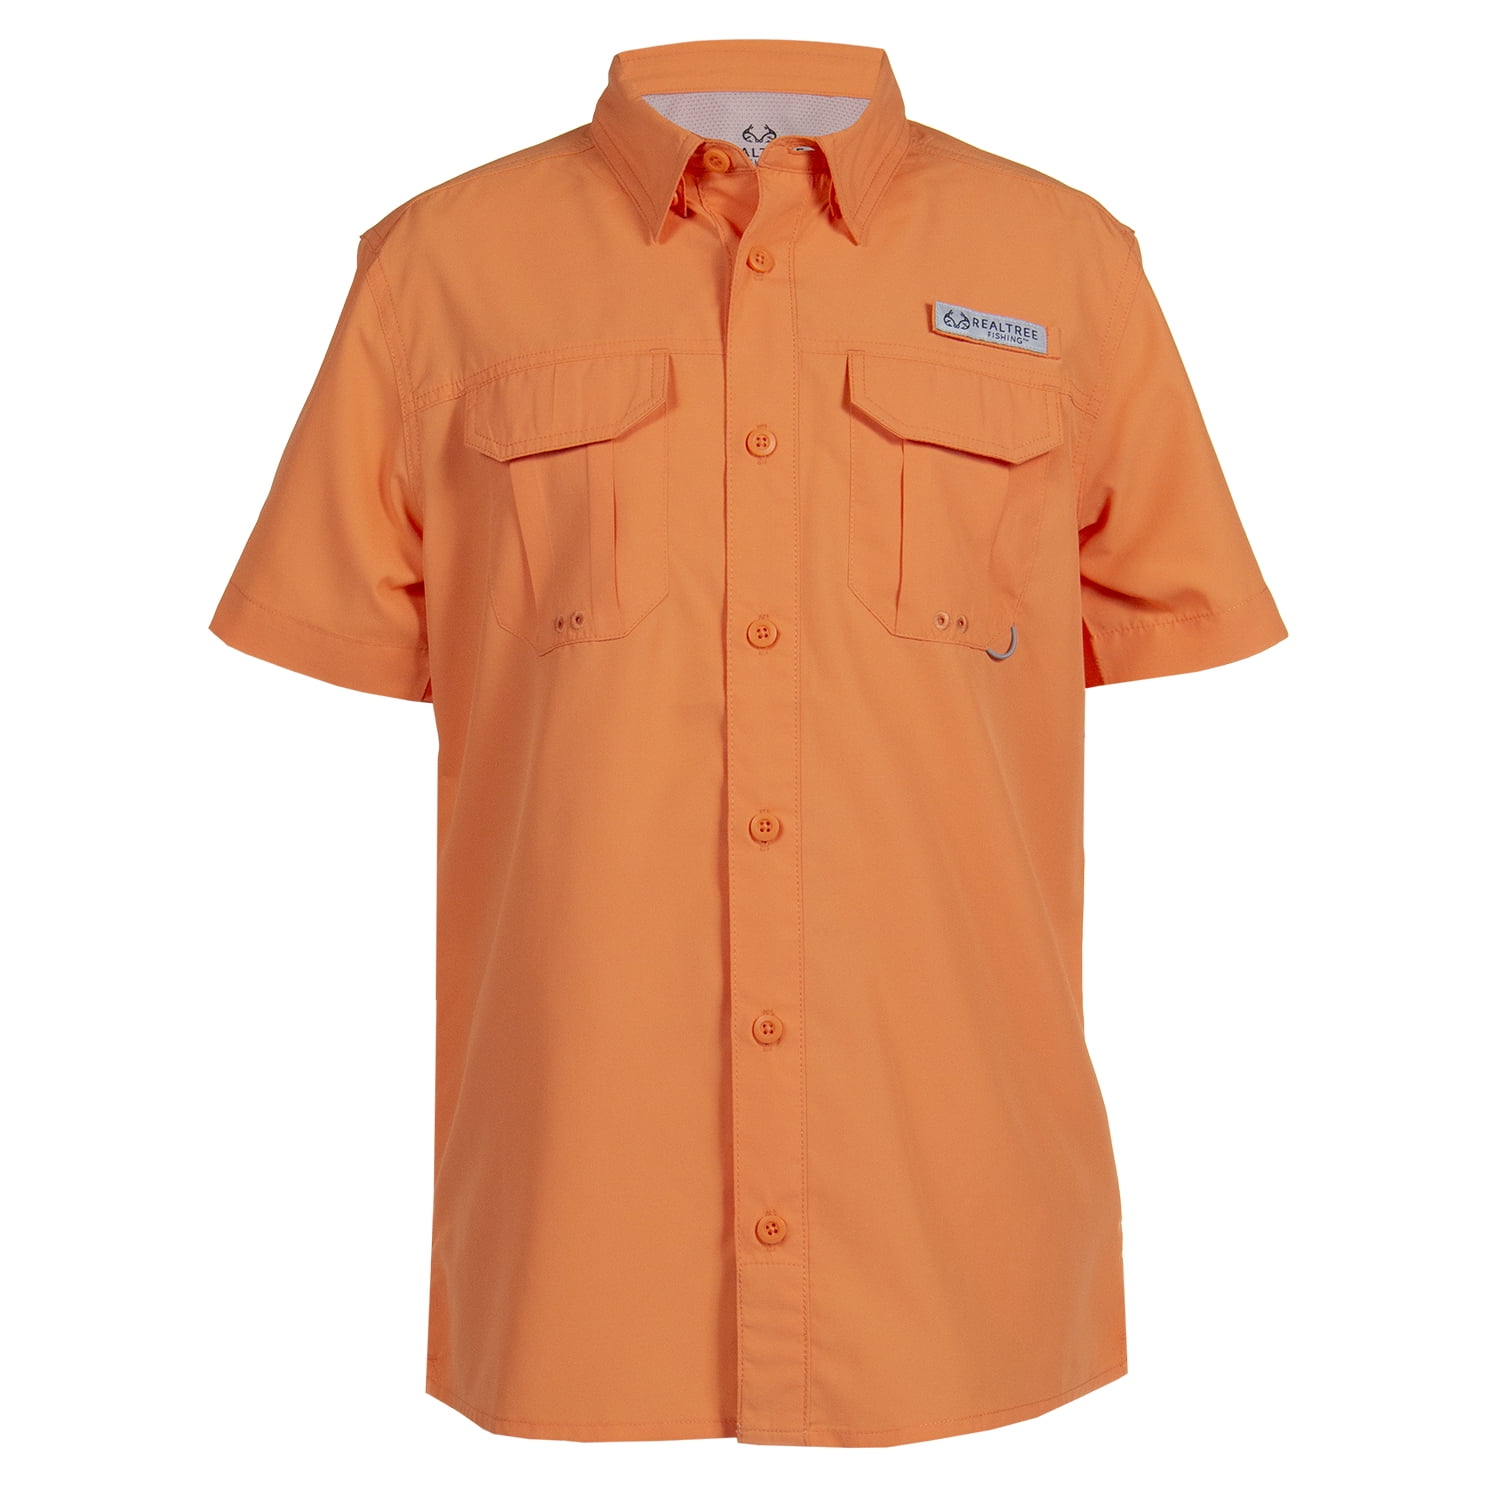 Magellan Outdoors, Shirts & Tops, Kids Magellan Long Sleeve Fishing Shirt  Size Large